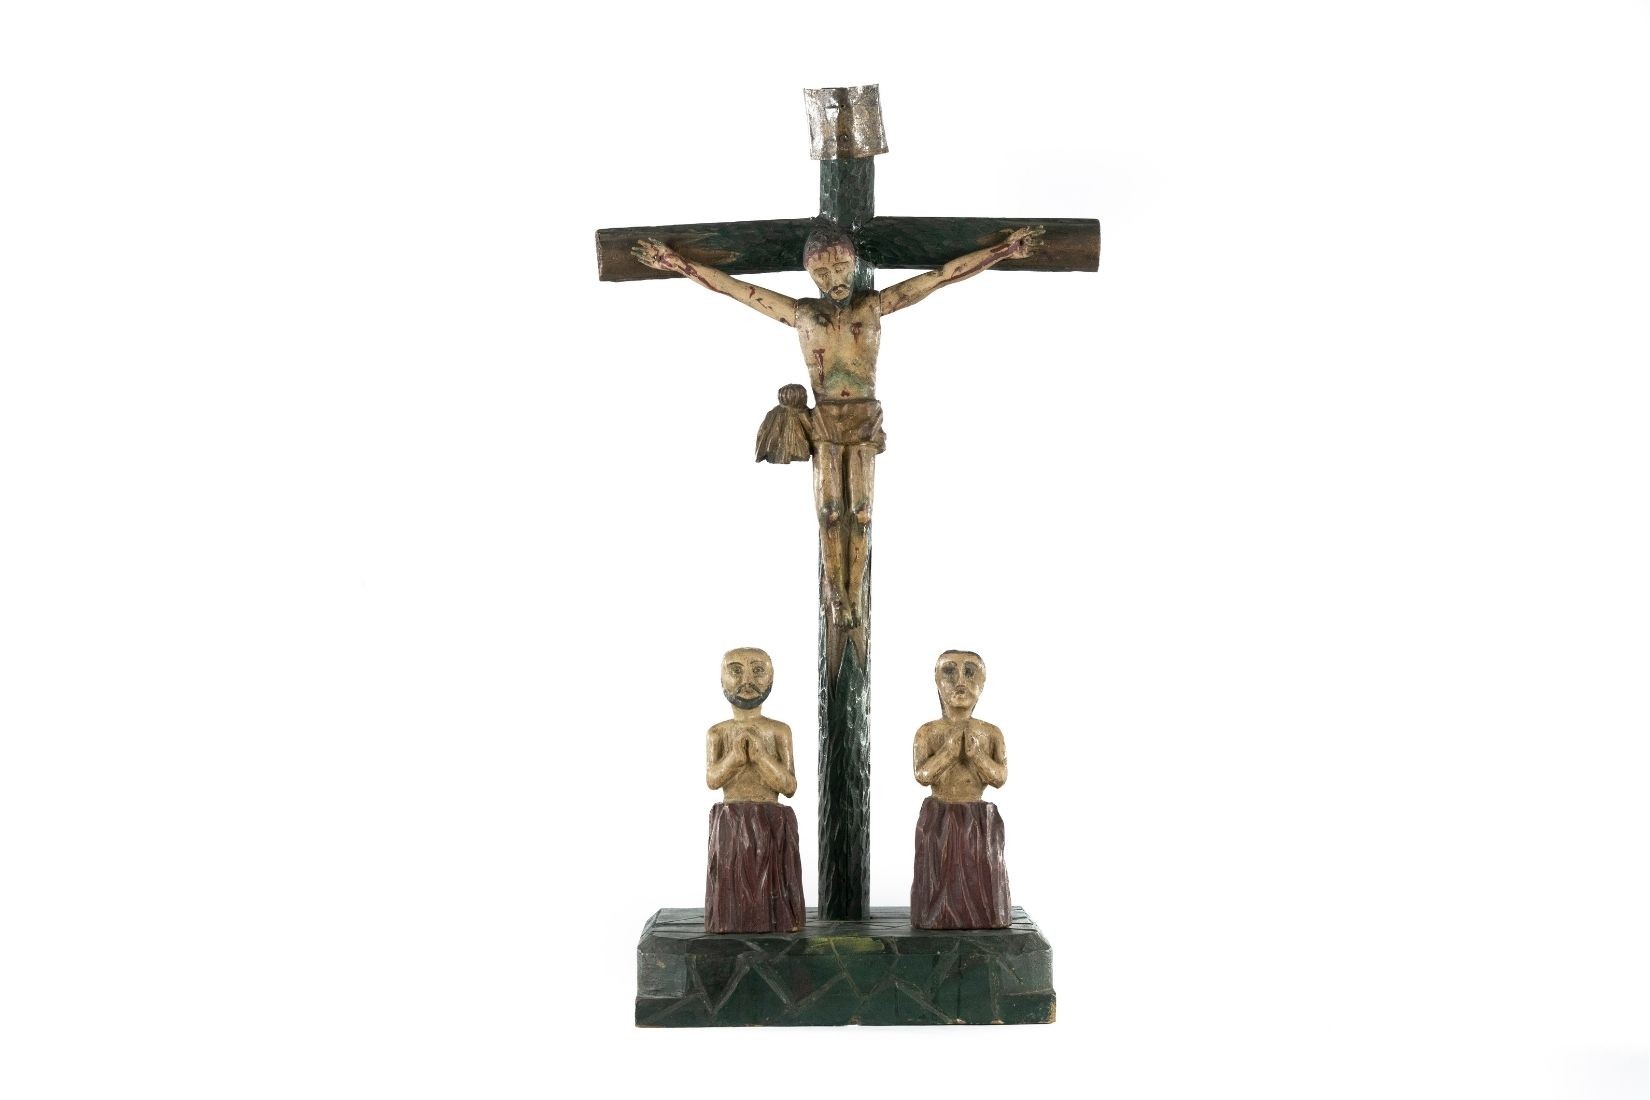 Cruz de ánimas, madera tallada y policromada. Artesano desconocido. San Cristóbal de Las Casas, Chis. 1960. Col. María Teresa Pomar. (Foto: EKV).